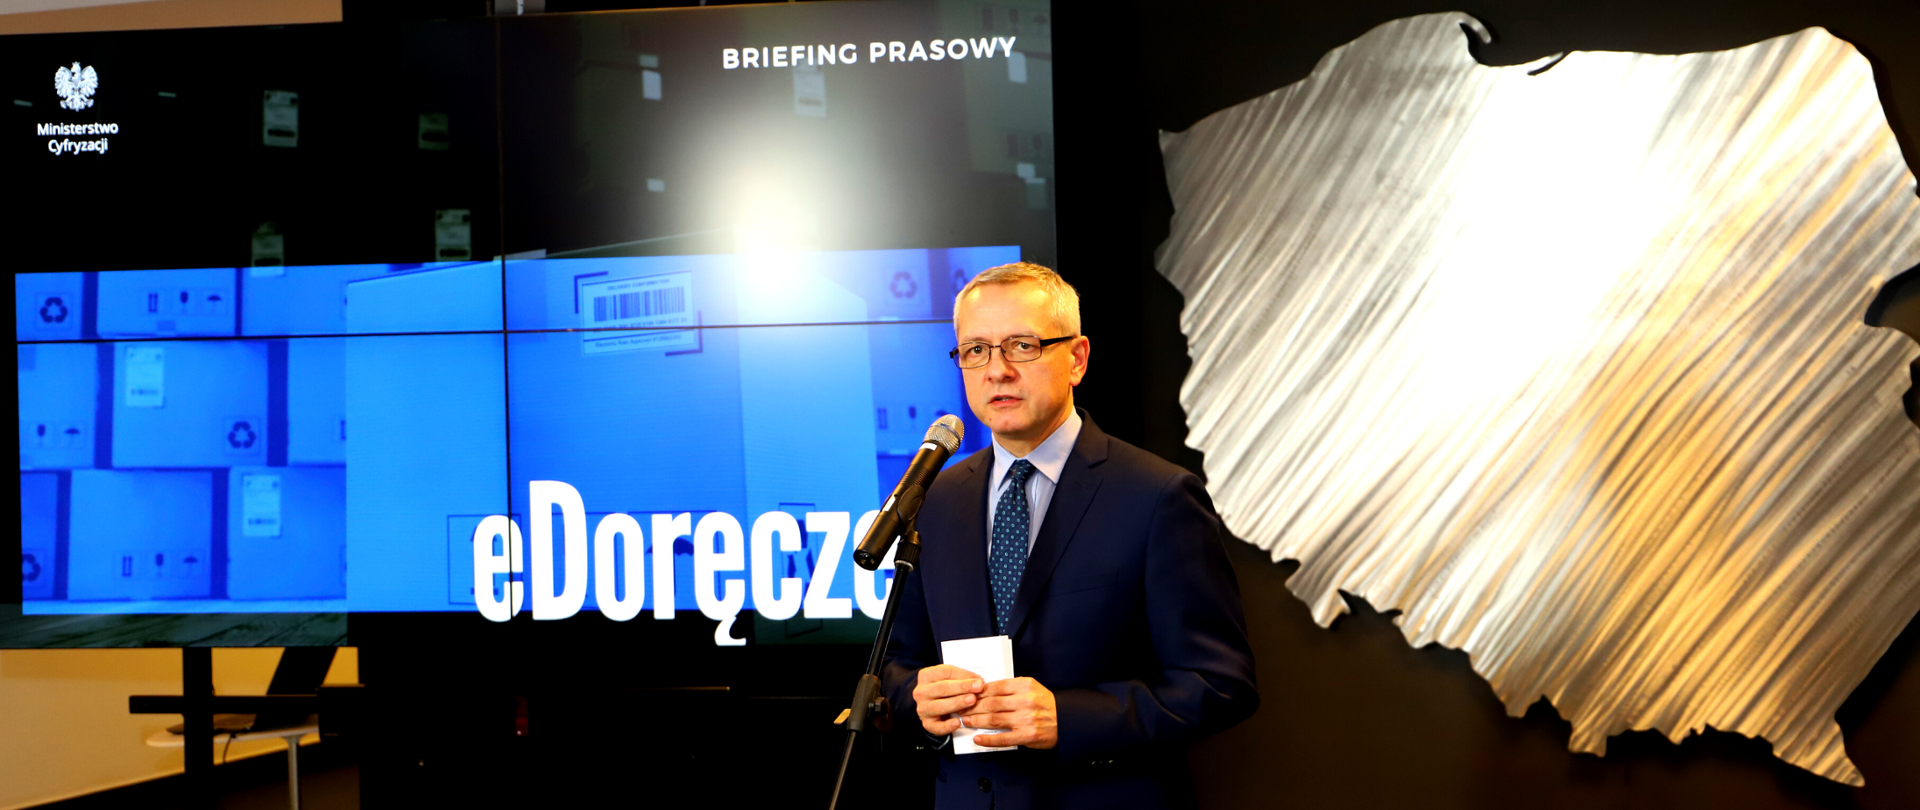 Minister Marek Zagórski podczas briefingu prasowego , za nim kontur mapy Polski oraz napis "eDoręczenia".